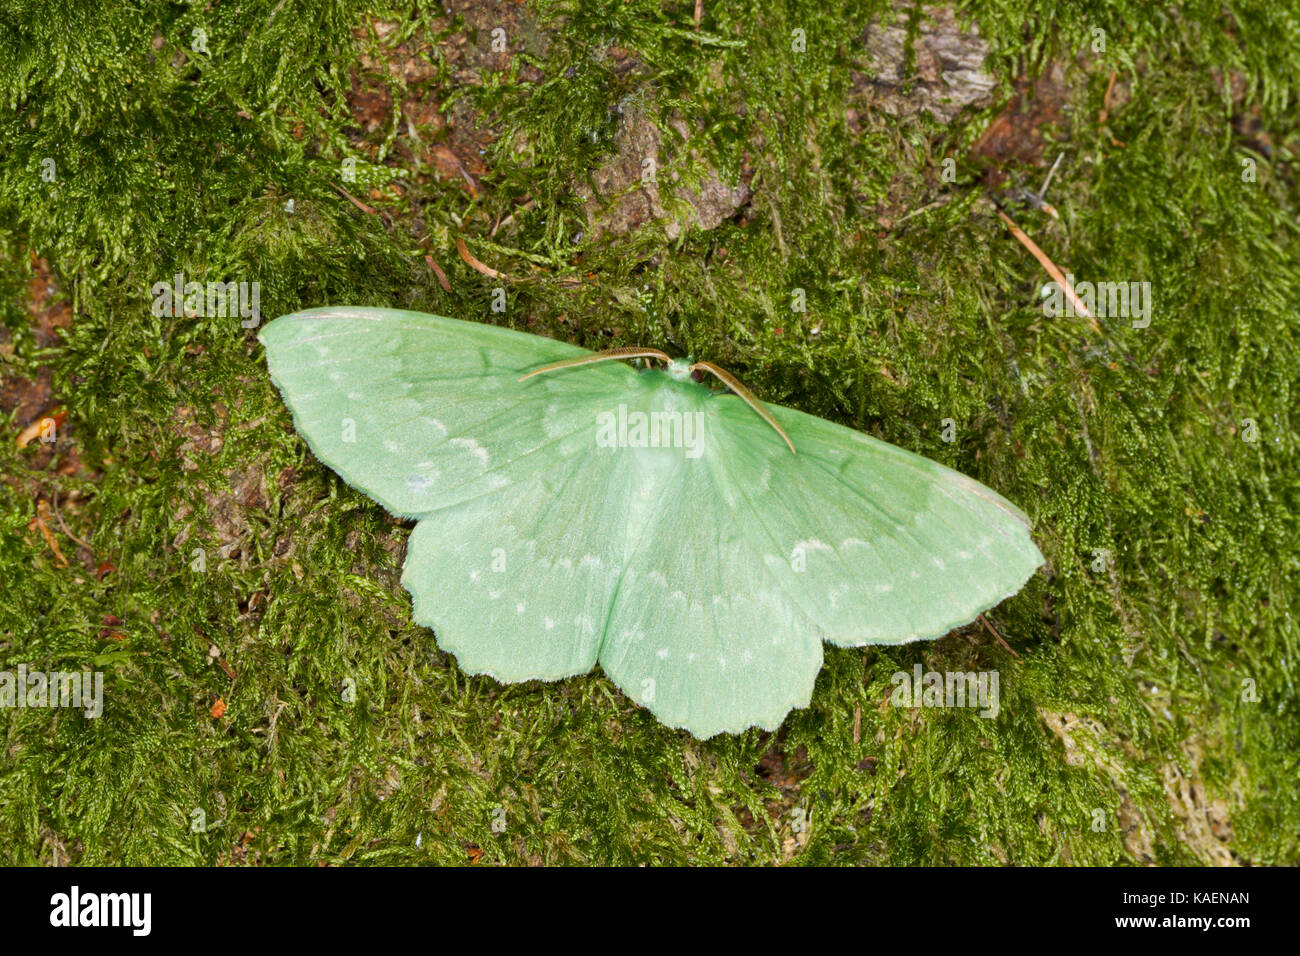 Grand Emerald (Geometra papilionaria) papillon adulte reposant sur la mousse. Powys, Pays de Galles. Juillet. Banque D'Images